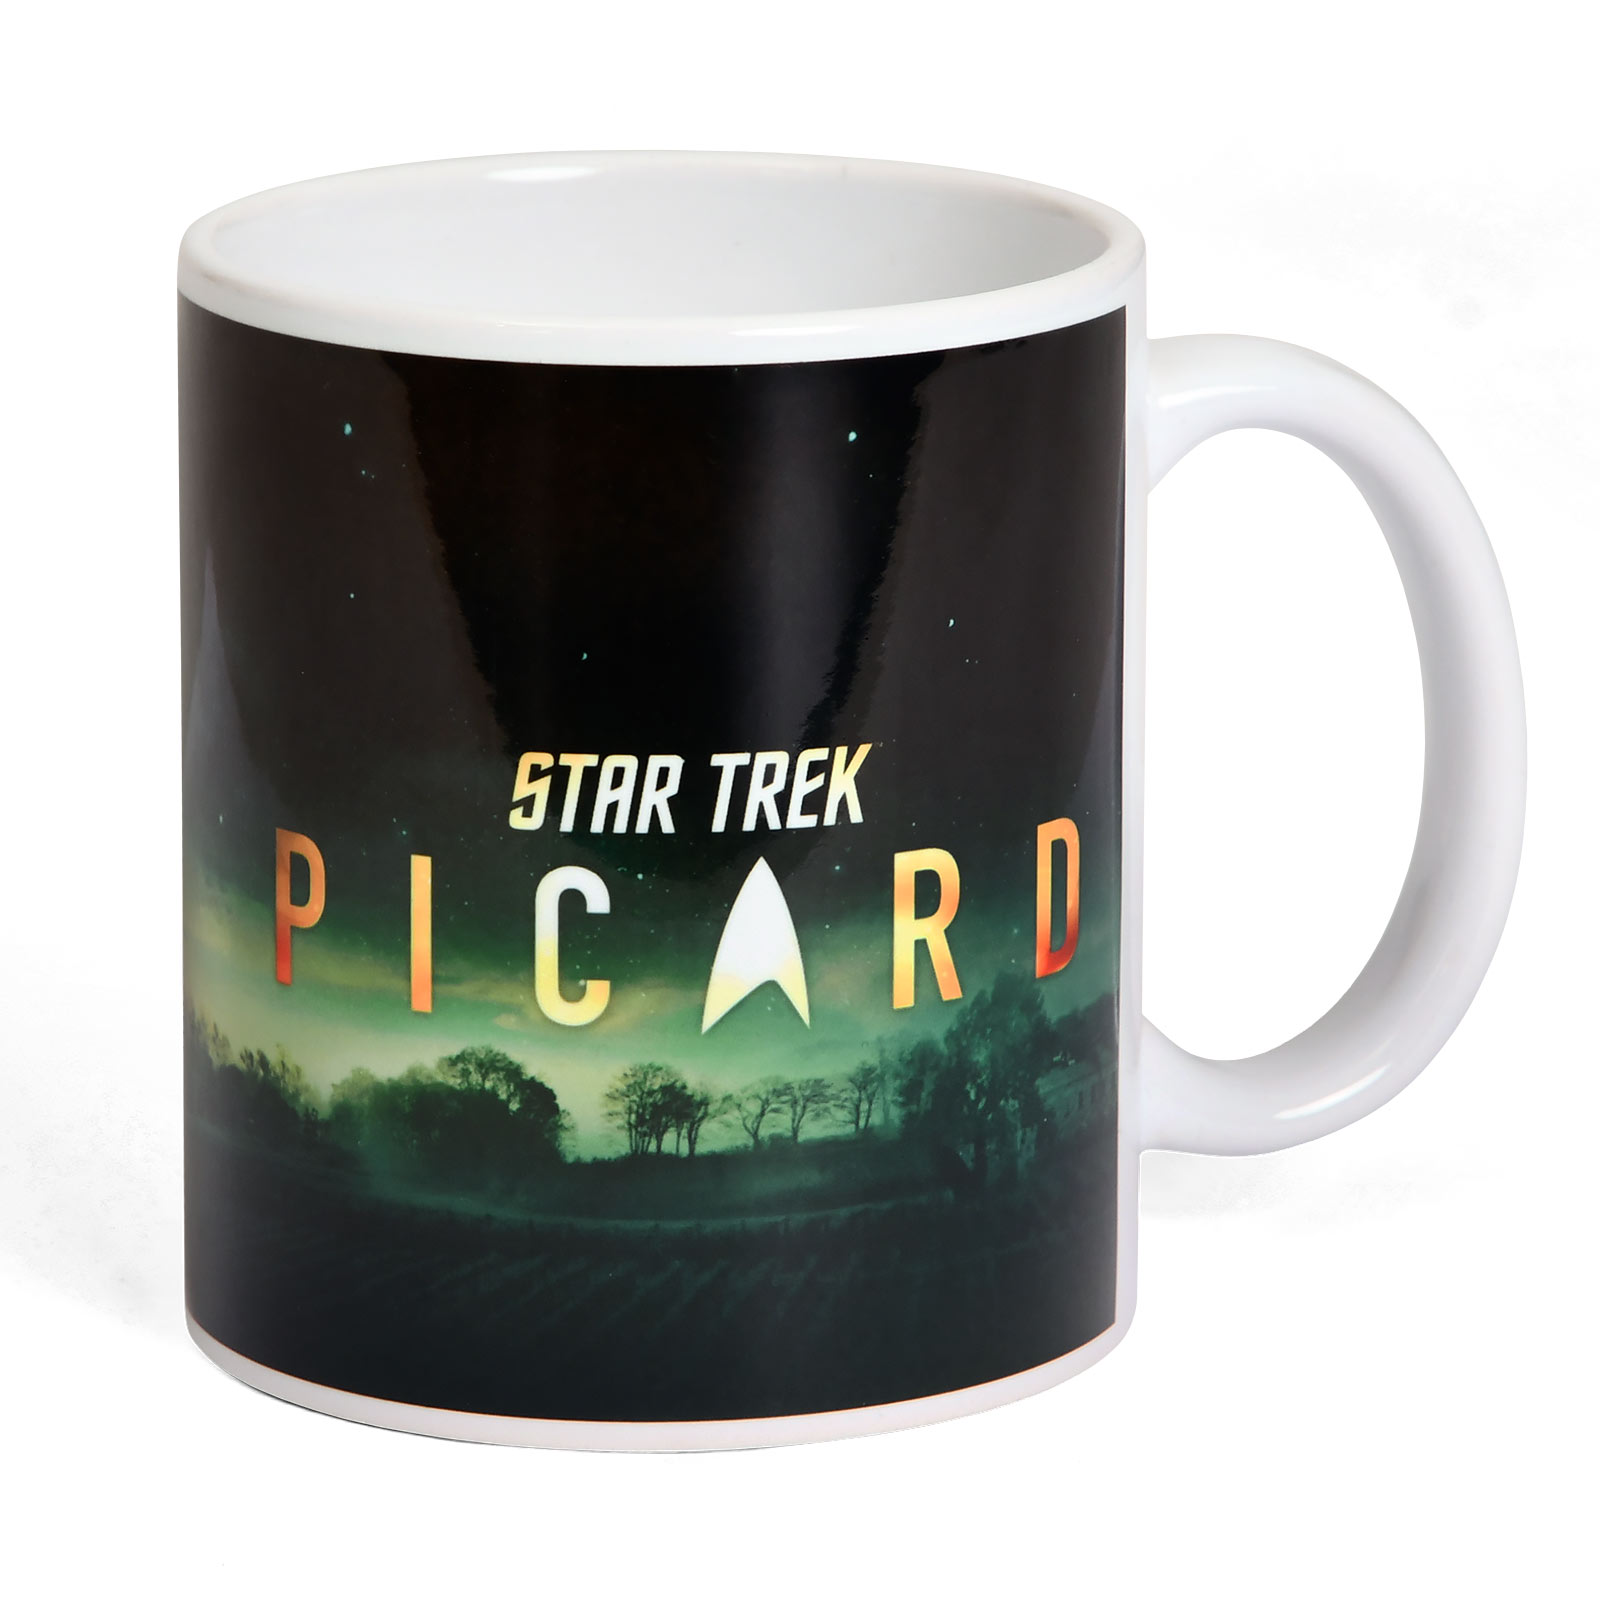 Star Trek - Picard Characters Mug